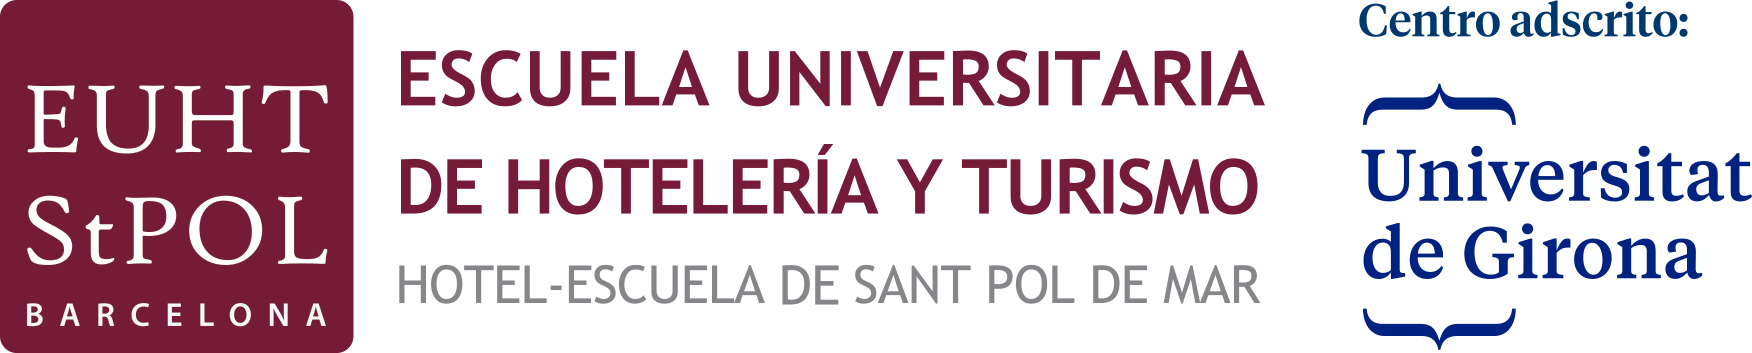 Escuela Universitaria de Hotelería y Turismo de Sant Pol de Mar